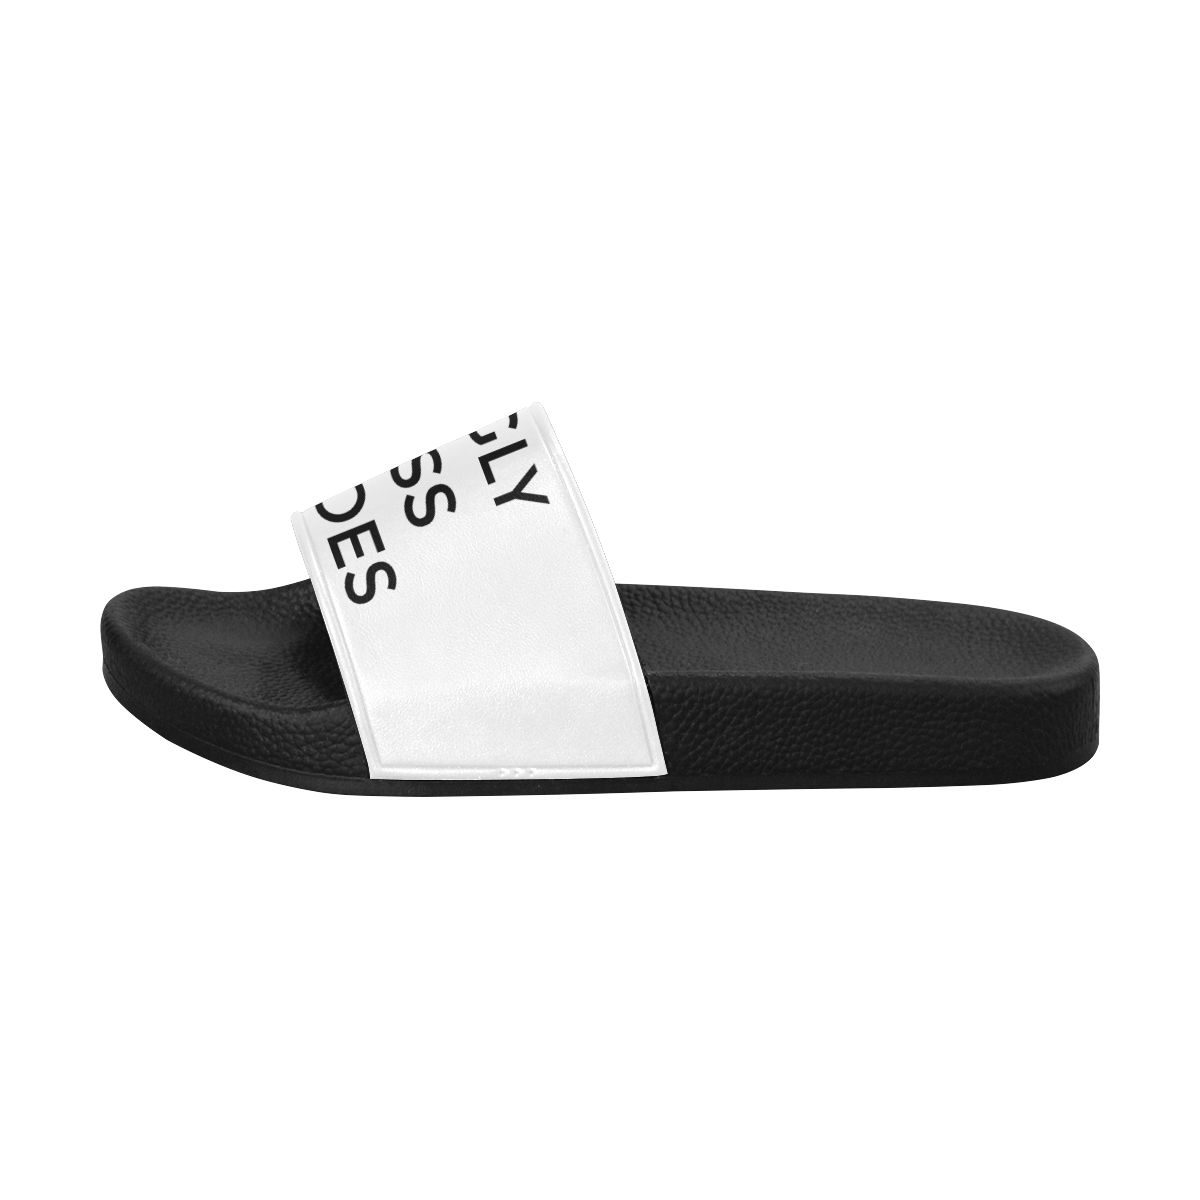 shoes Men's Slide Sandals/Large Size (Model 057)